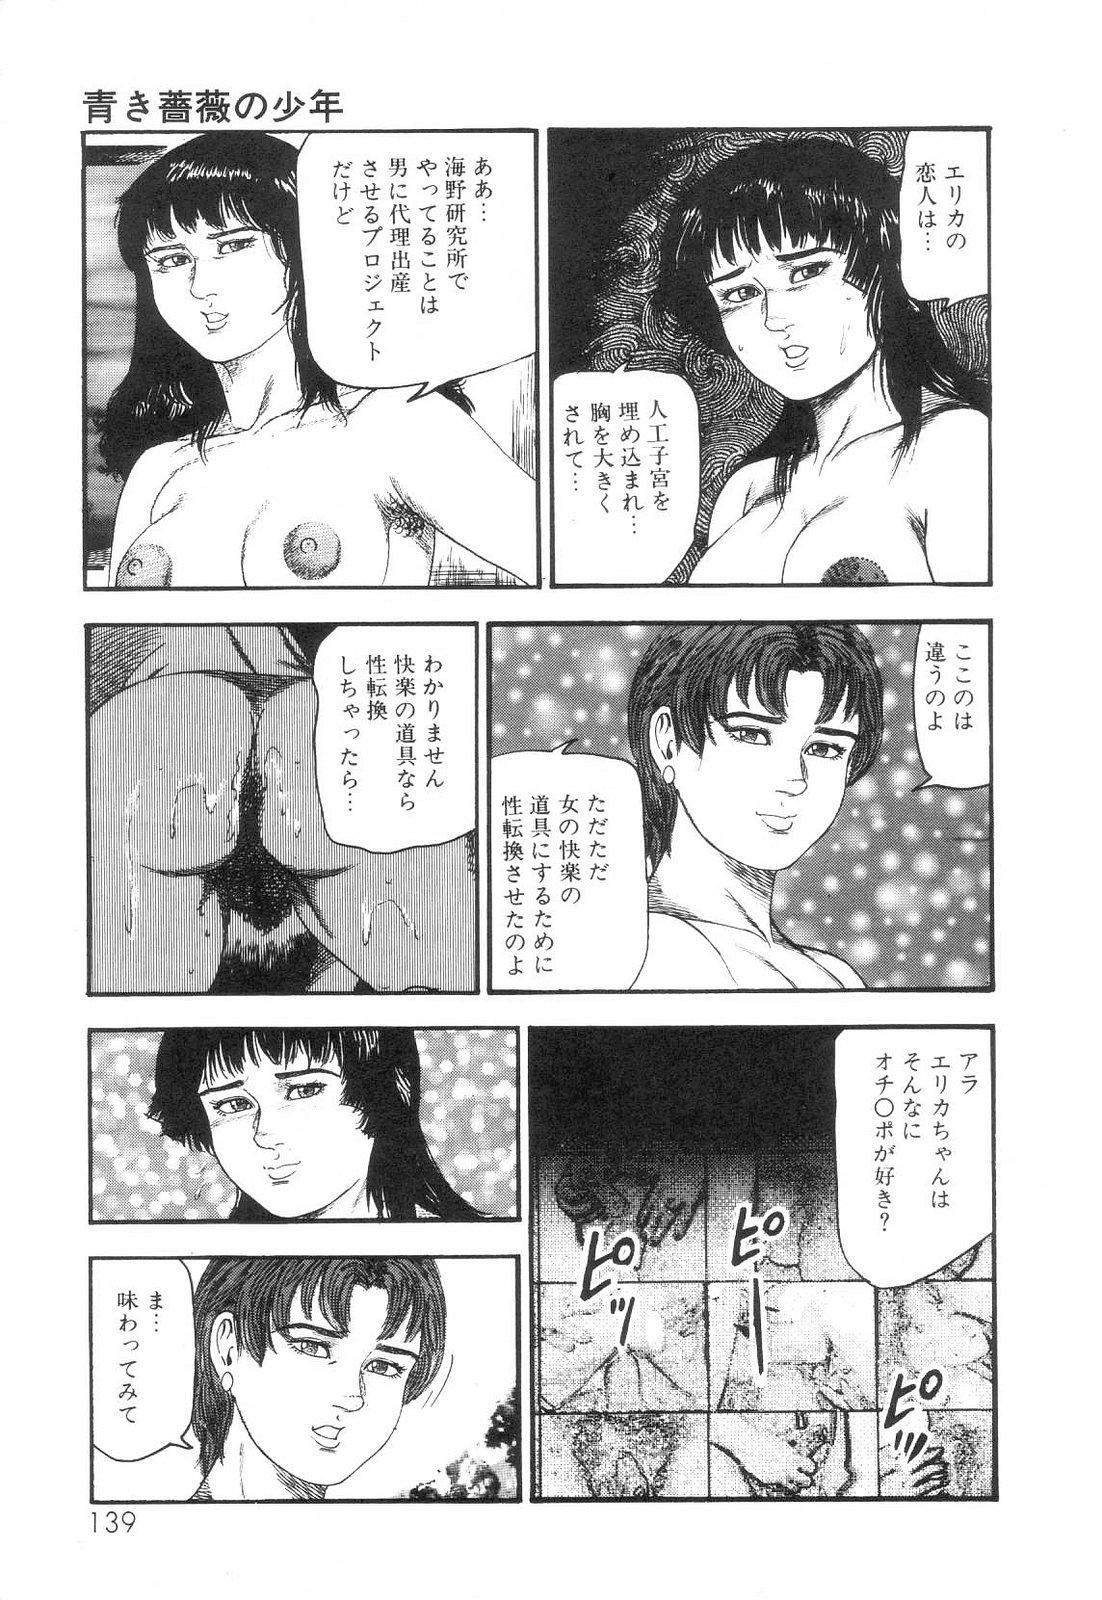 Shiro no Mokushiroku Vol. 6 - Juuai Erika no Shou 140